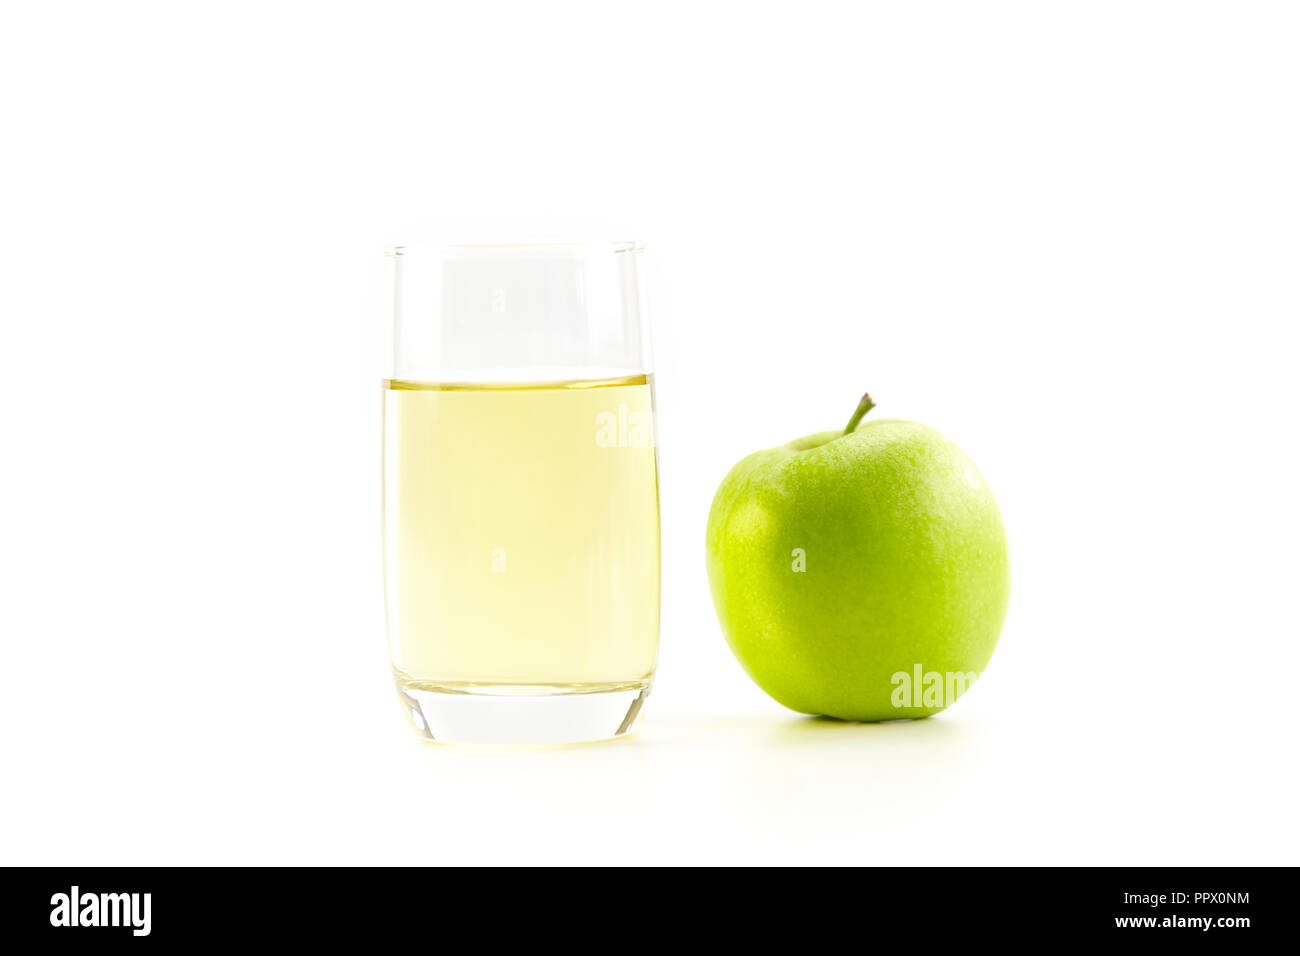 Una manzana verde y un vaso de zumo de manzana aislado sobre fondo blanco. Foto de stock